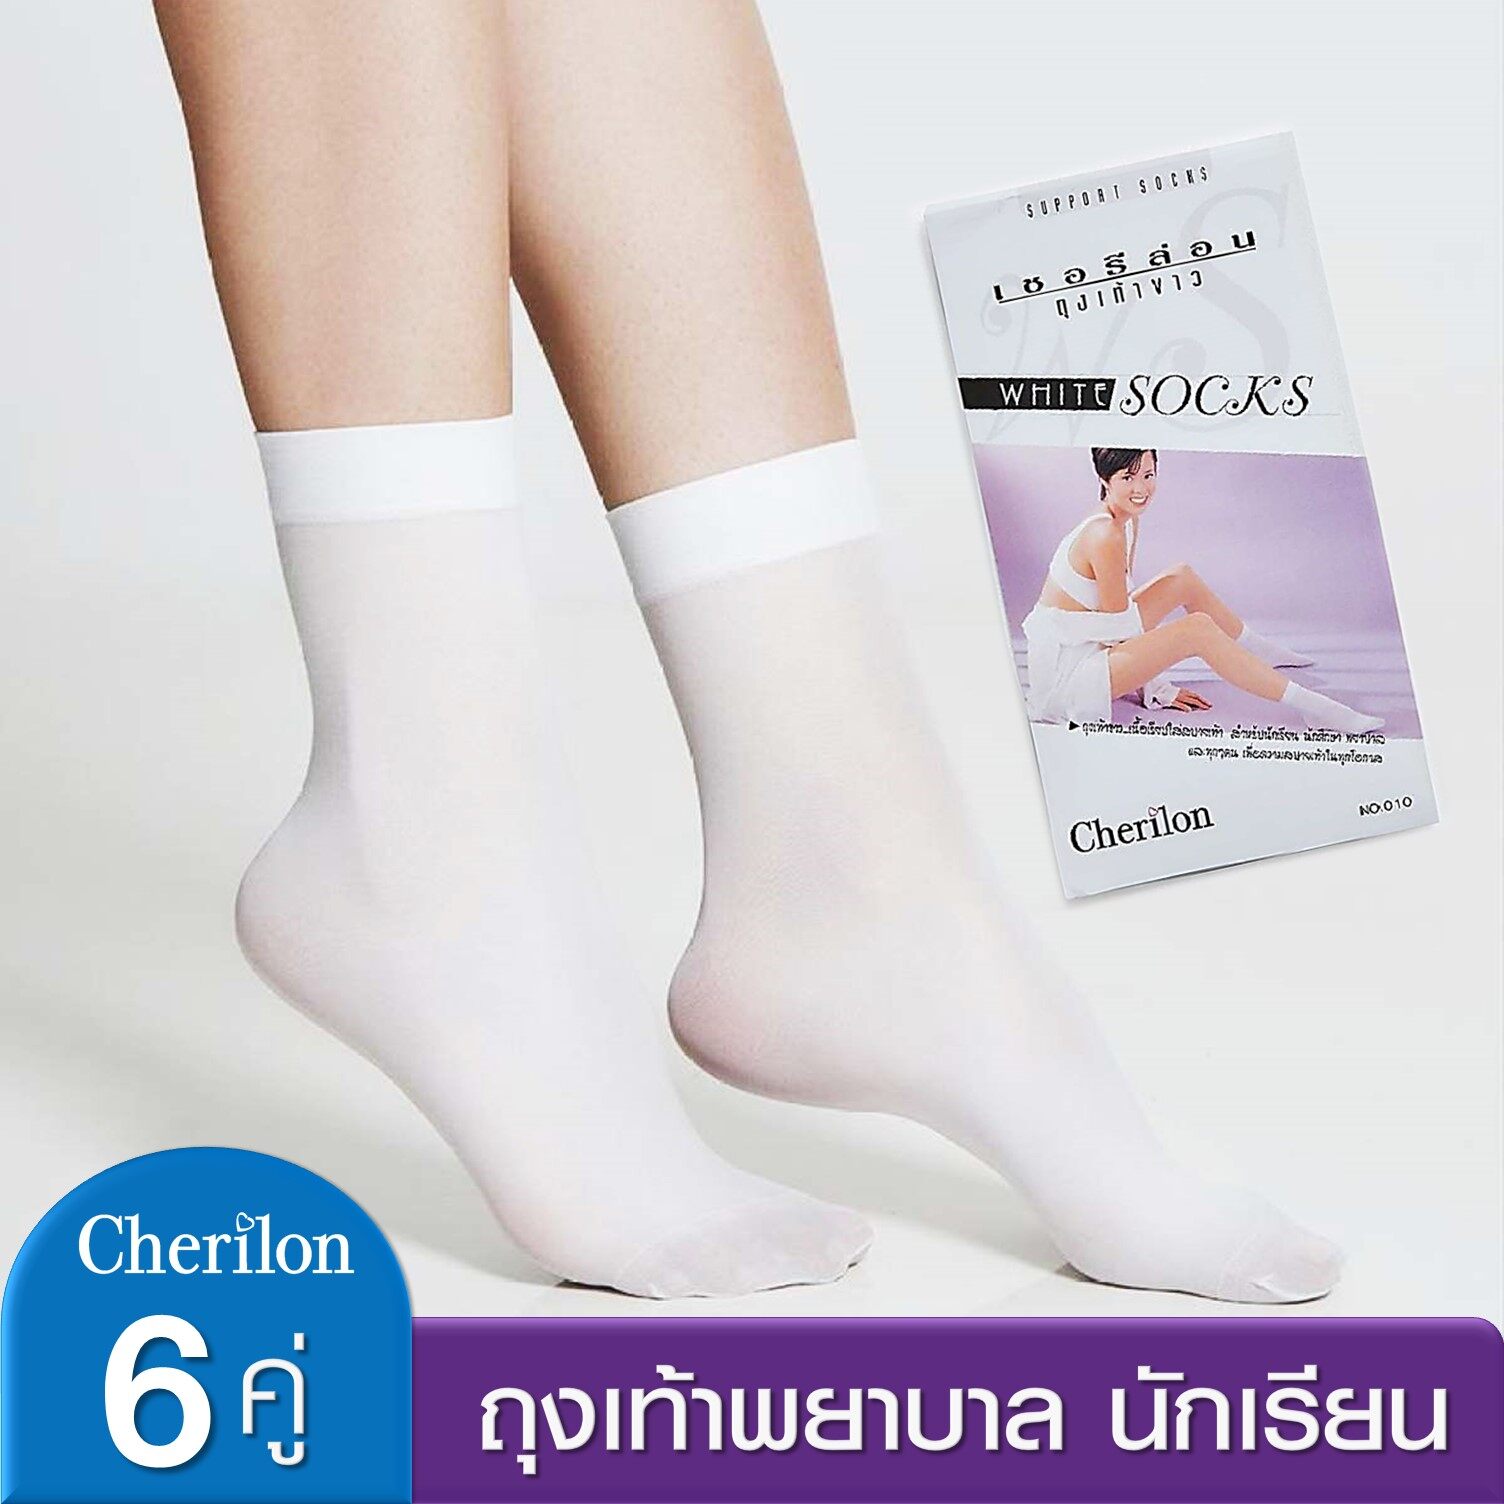 [คุ้ม 6 คู่] Cherilon ถุงเท้าพยาบาล ถุงเท้านักเรียน ถุงเท้าขาว ถุงเท้า เชอรีล่อน ใส่สบาย กระชับ NSB-010-10F (6 P)